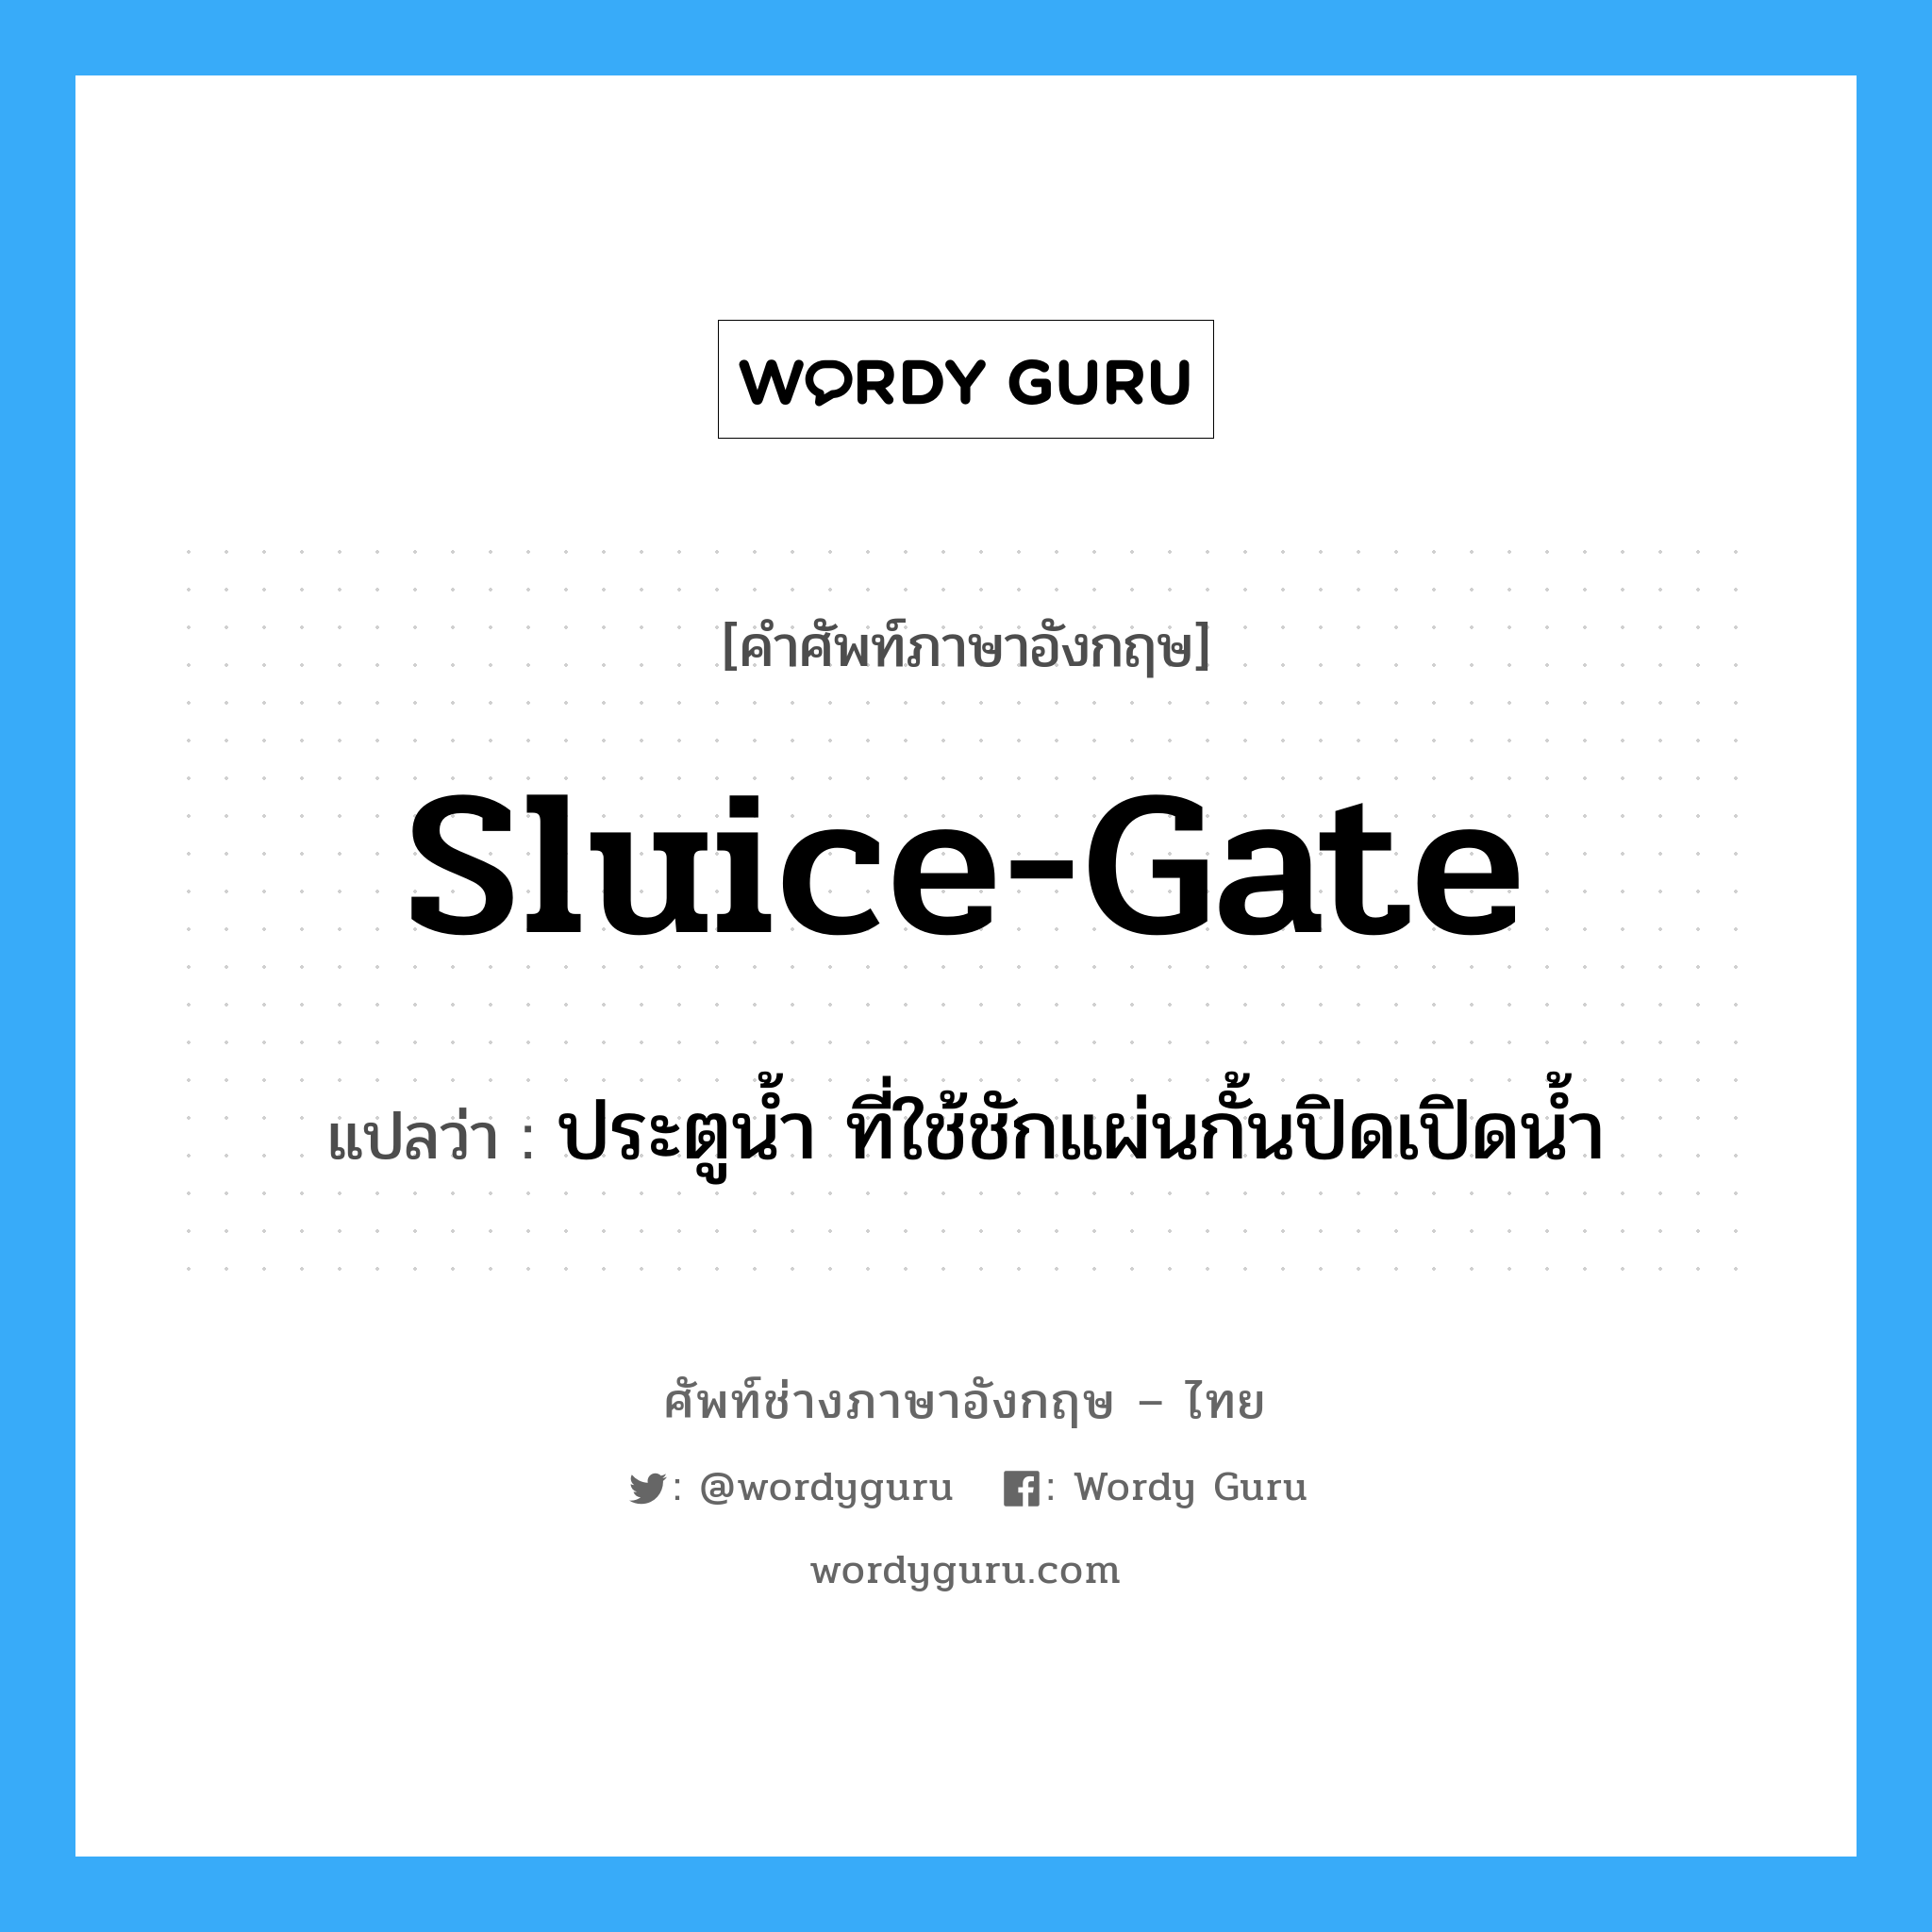 sluice-gate แปลว่า?, คำศัพท์ช่างภาษาอังกฤษ - ไทย sluice-gate คำศัพท์ภาษาอังกฤษ sluice-gate แปลว่า ประตูน้ำ ที่ใช้ชักแผ่นกั้นปิดเปิดน้ำ